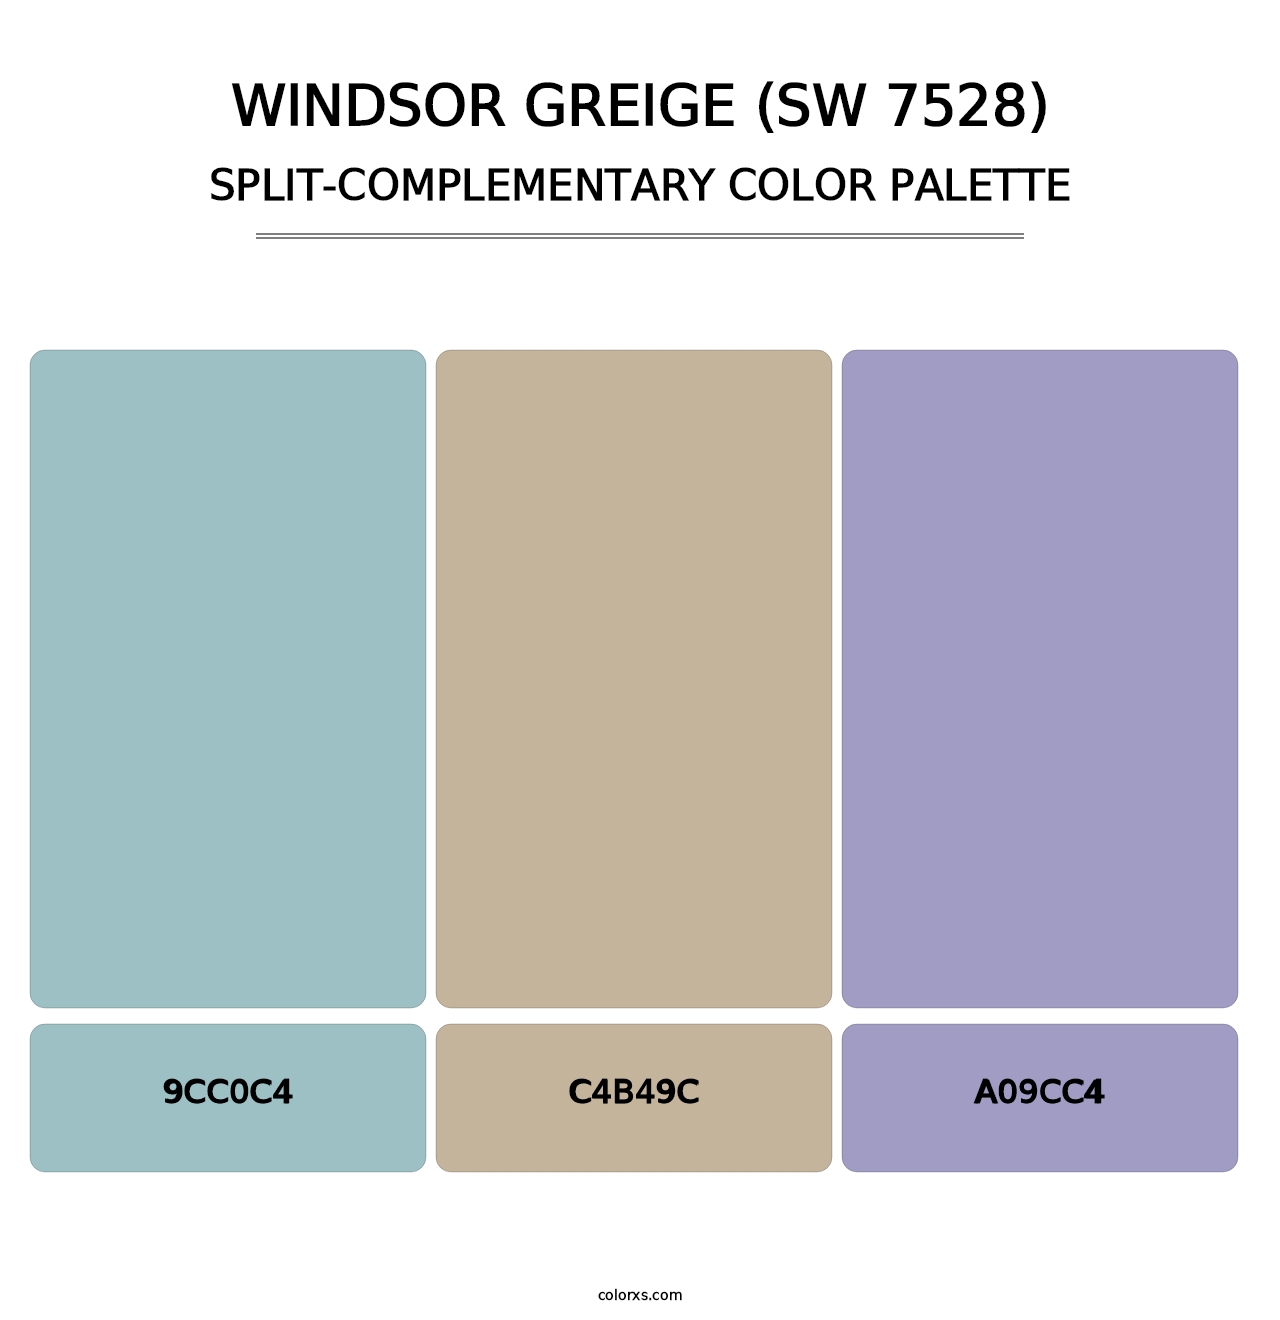 Windsor Greige (SW 7528) - Split-Complementary Color Palette